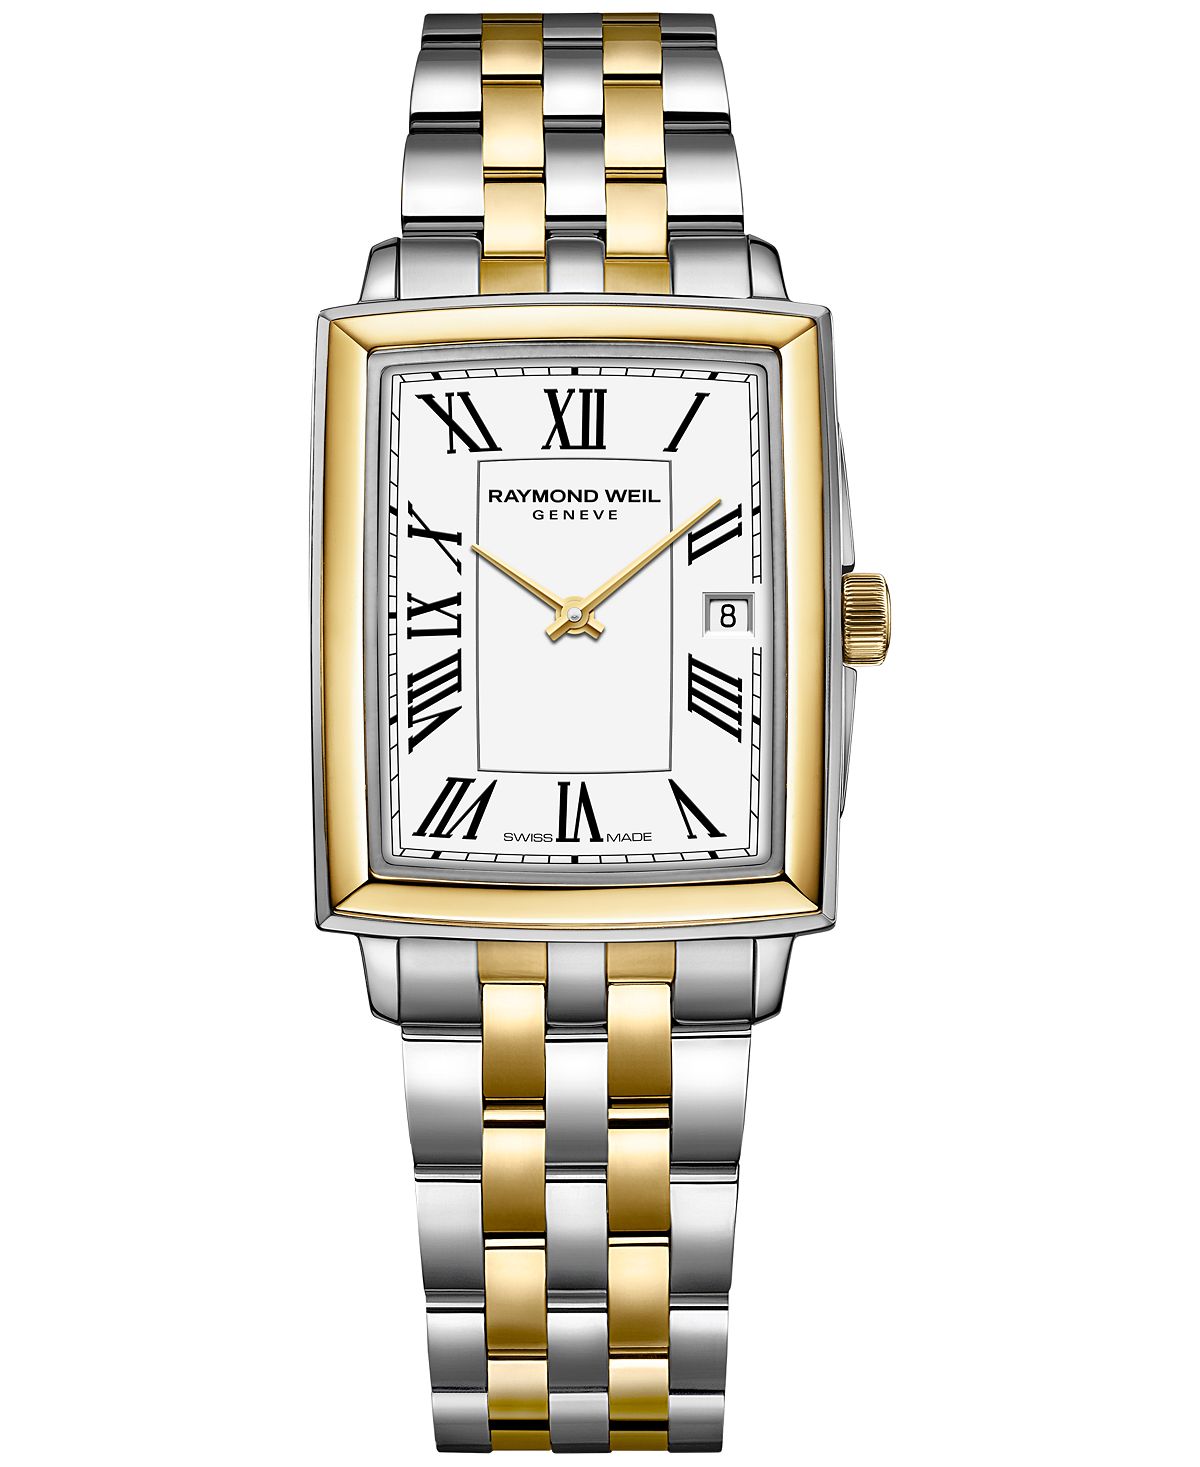 Женские швейцарские часы Toccata с браслетом из золота и нержавеющей стали, 25x35 мм Raymond Weil, белый queneau raymond connaissez vous paris